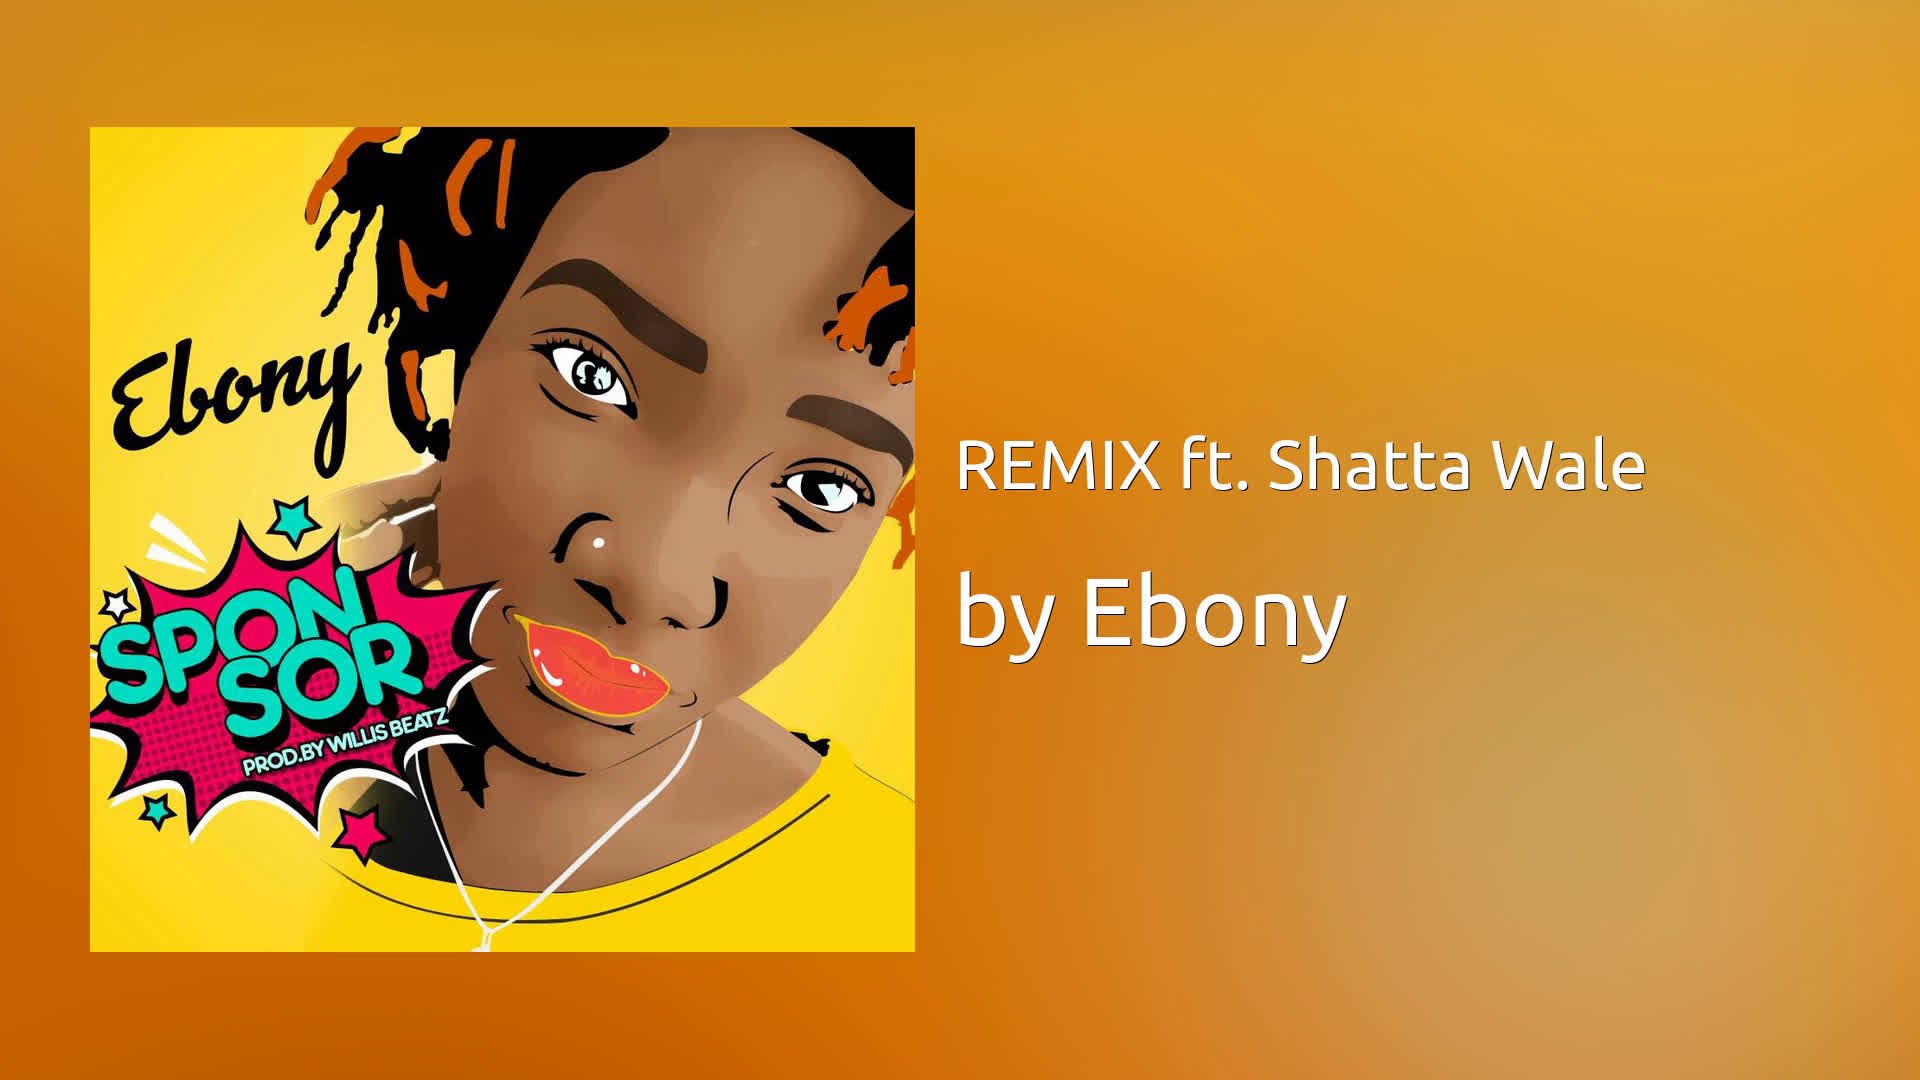 Ebony sponsor english lyric